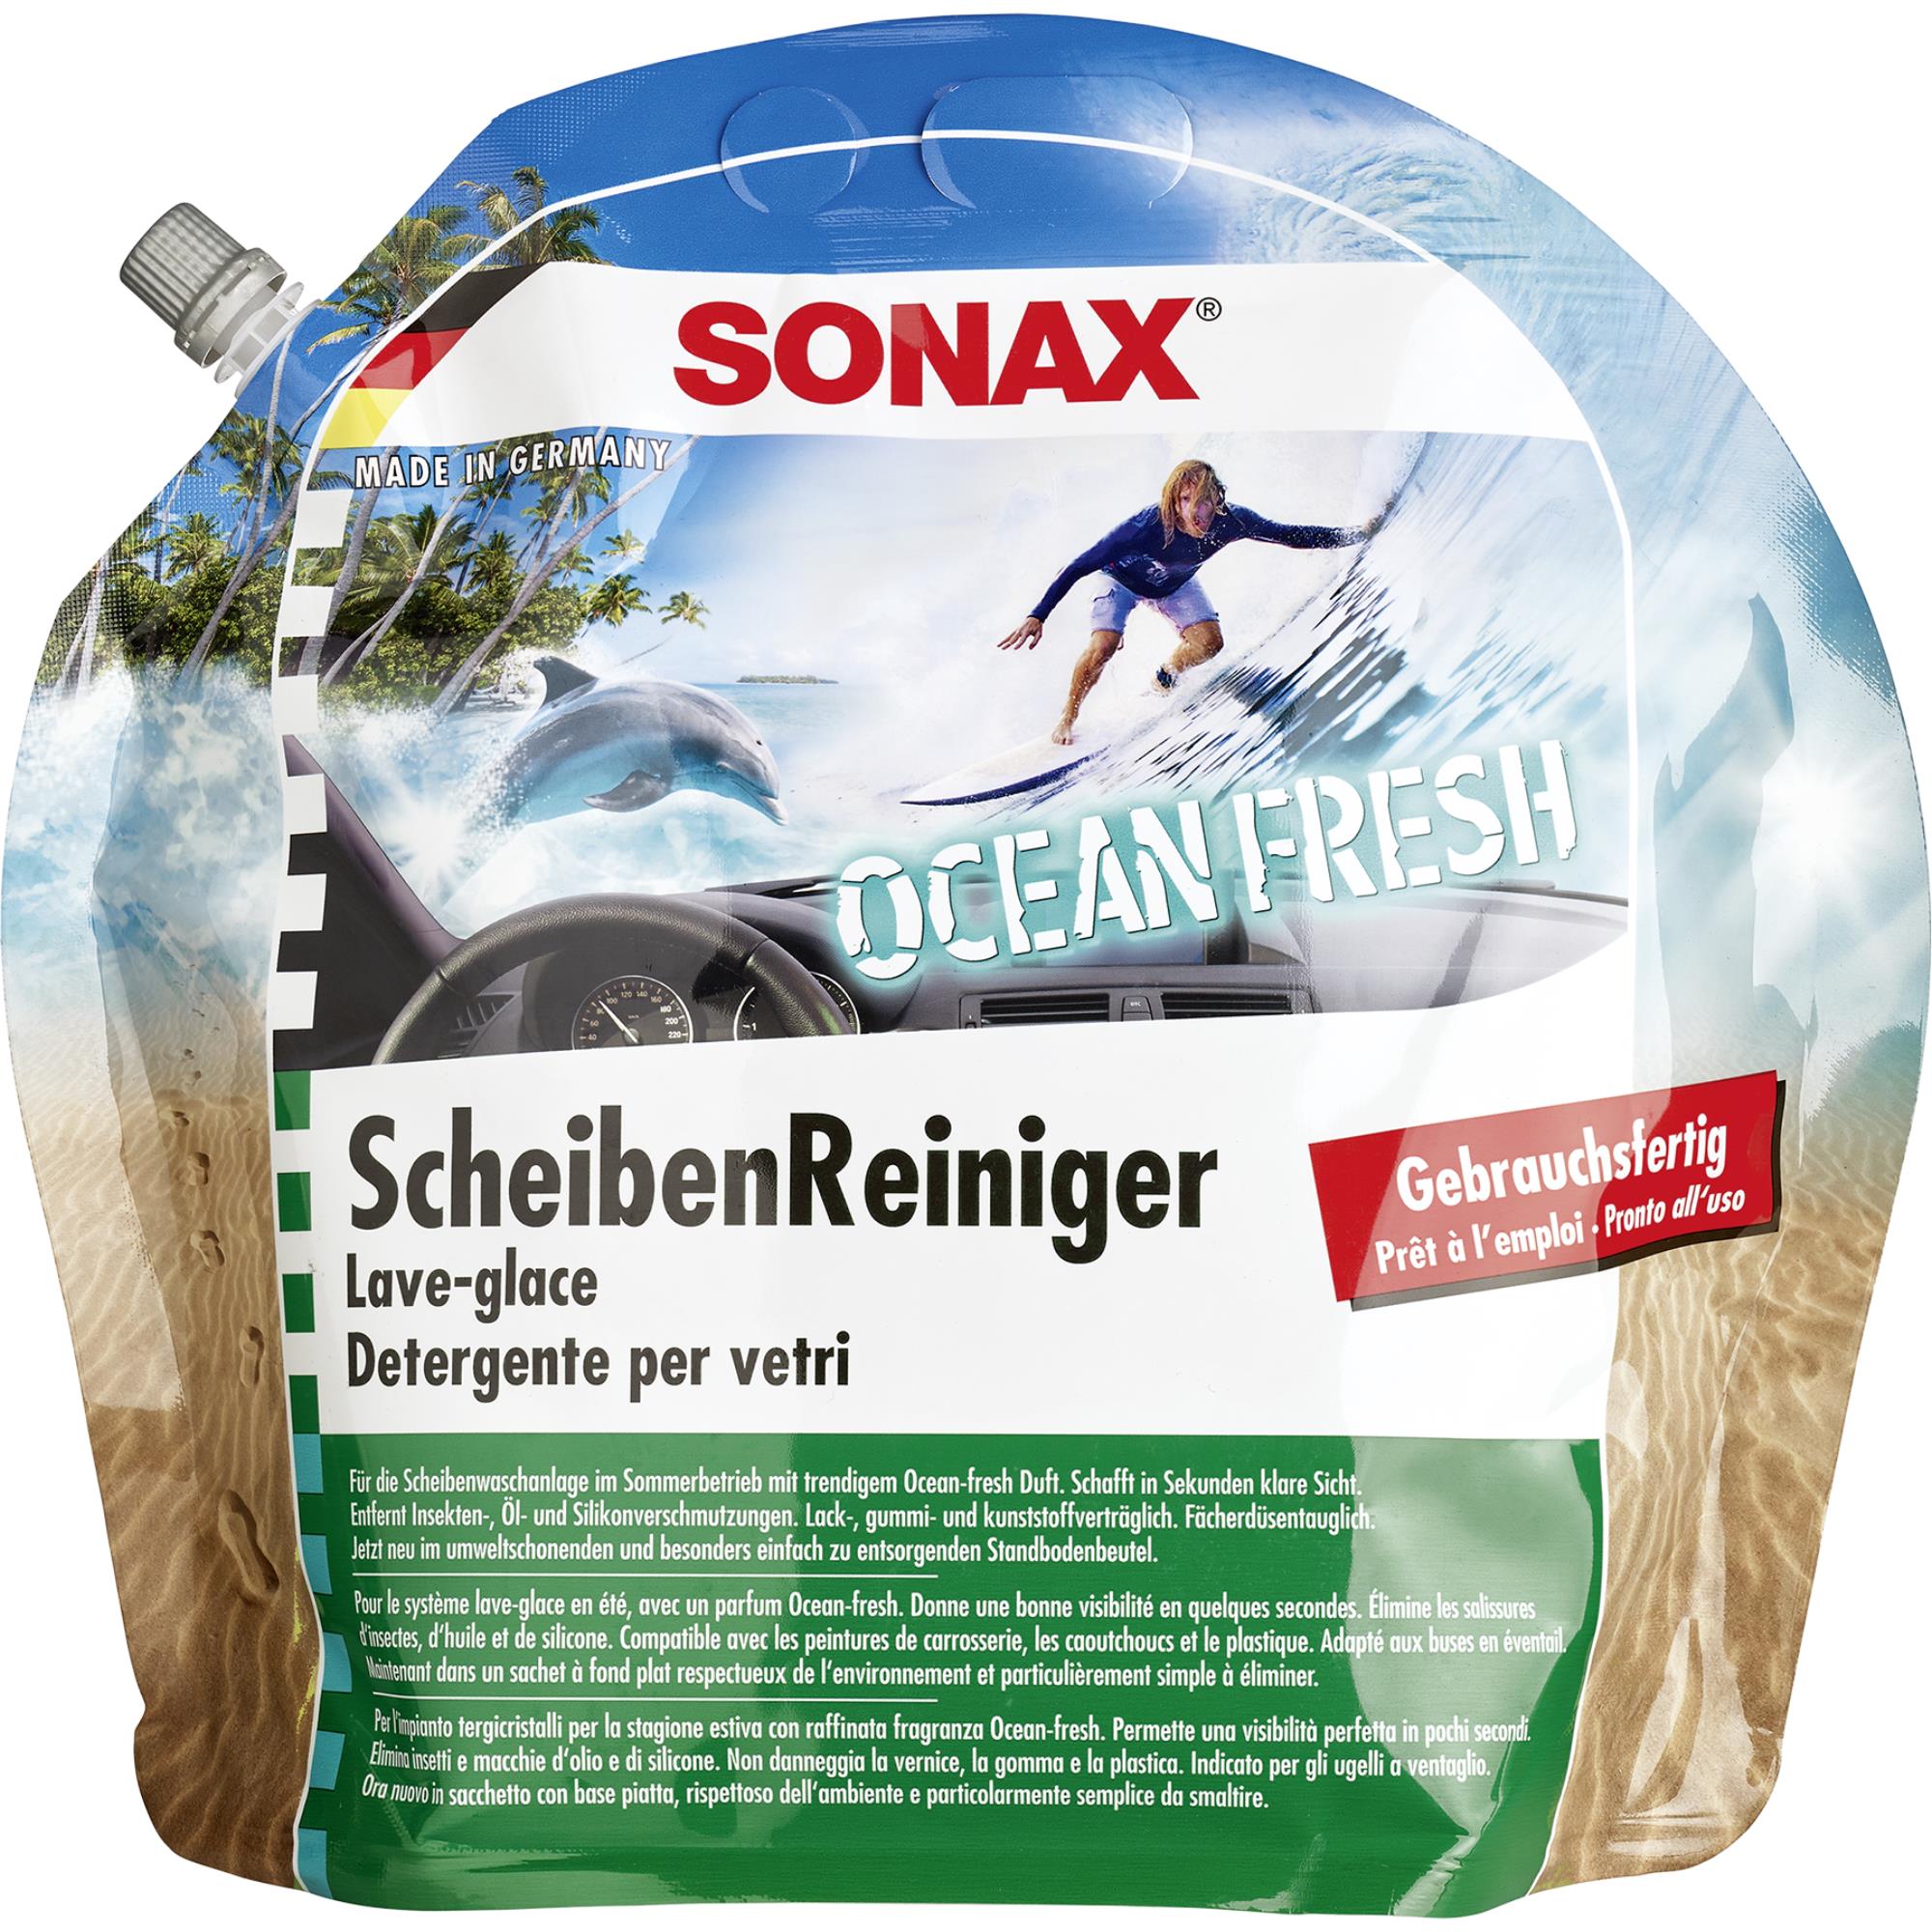 SONAX 03884410  ScheibenReiniger gebrauchsfertig Ocean-fresh 3 Liter